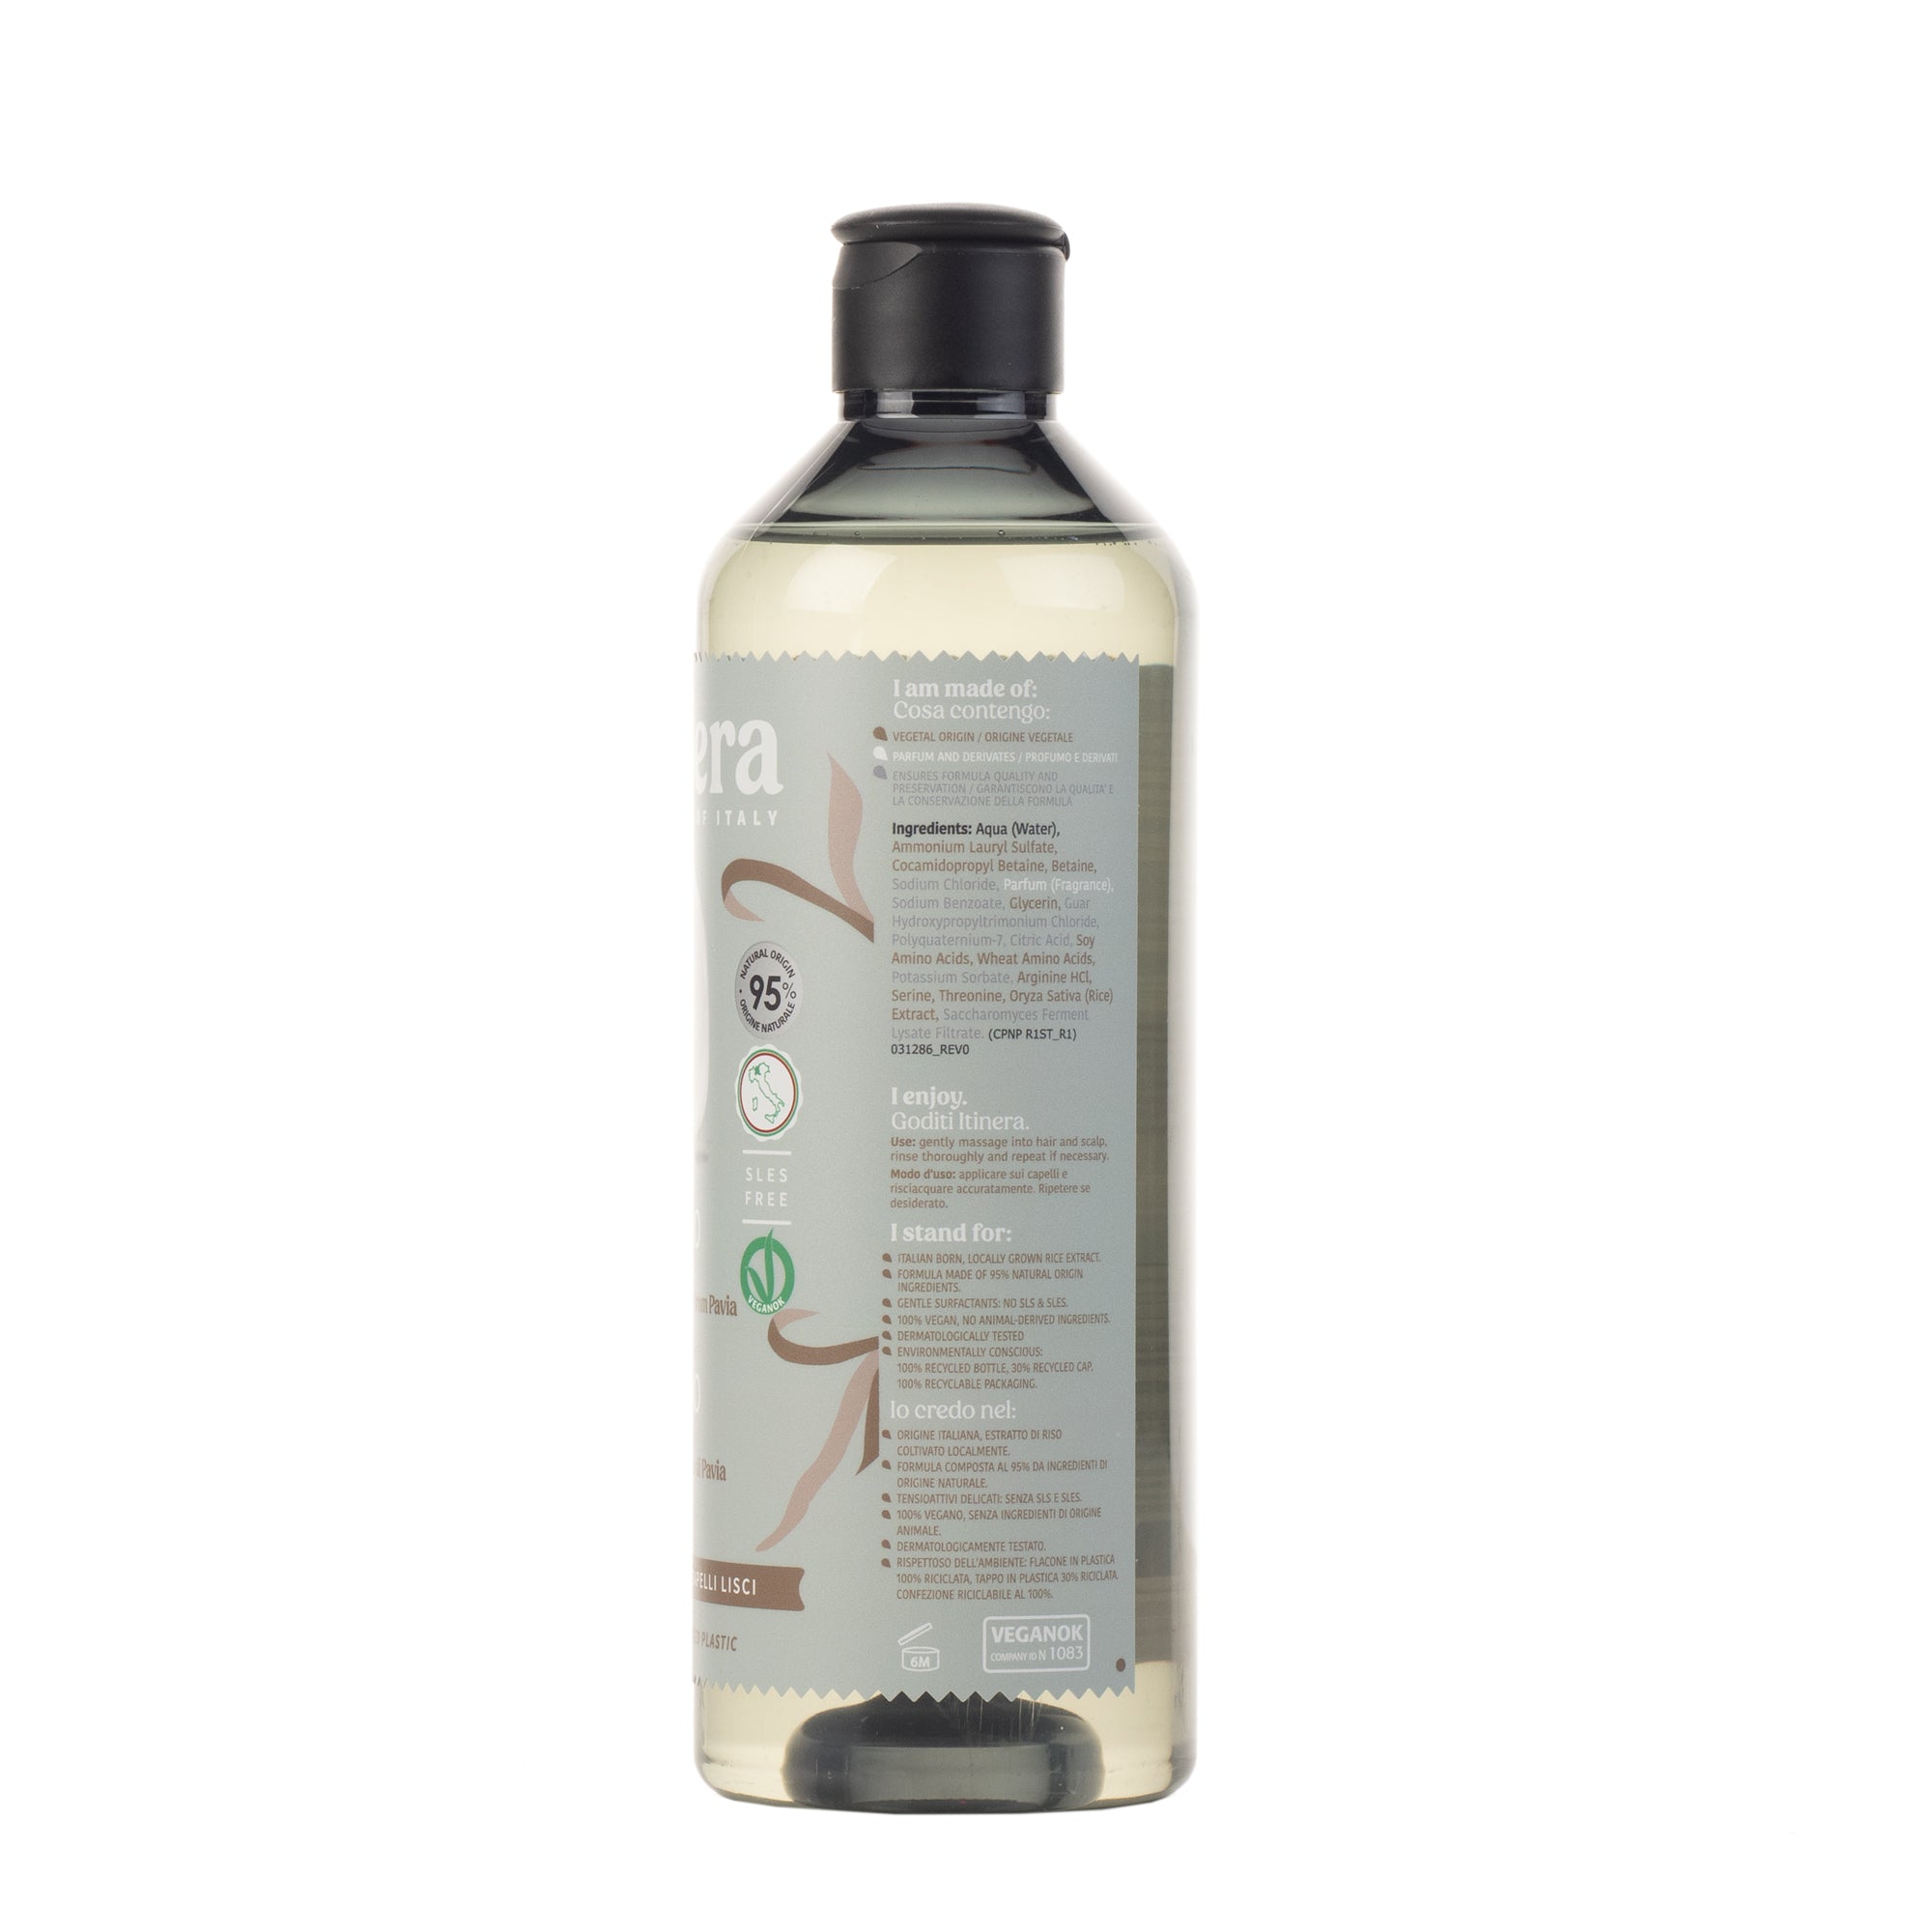 Itinera Silky Touch Shampoo (370 ml)